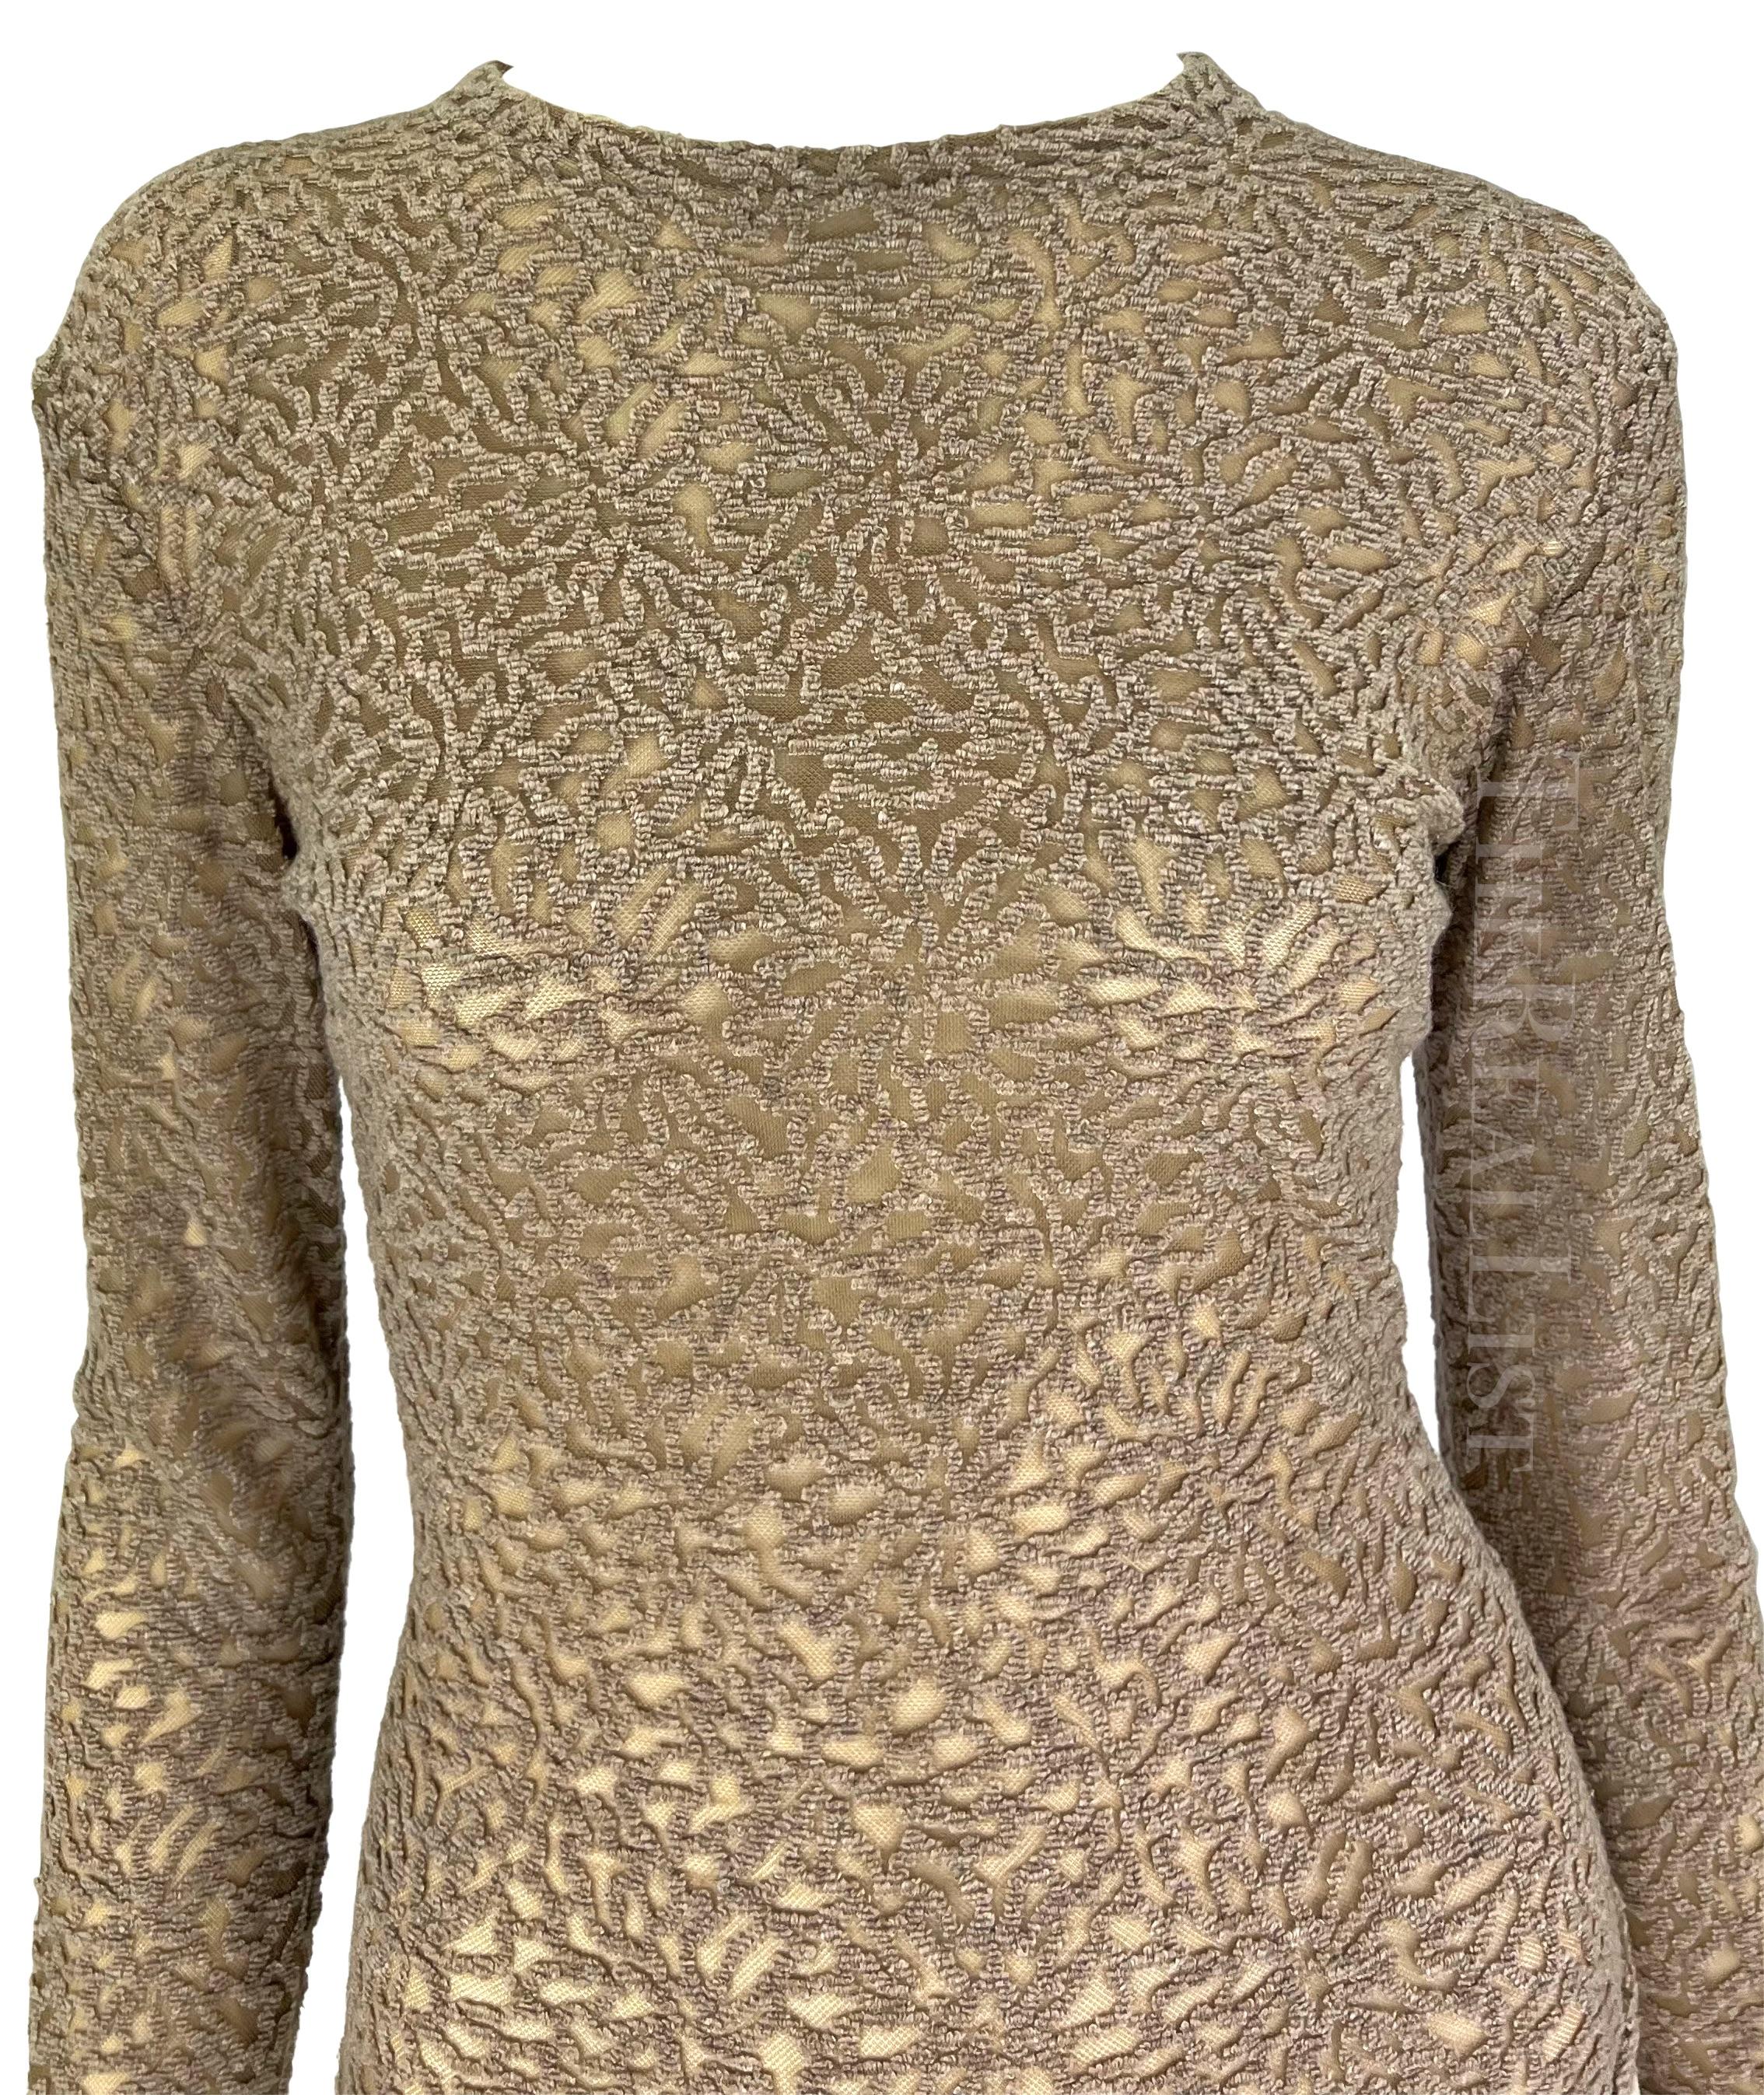 TheRealList présente : un body semi-transparent conçu par Gianni Versace. À partir des années 1990, le motif est appliqué sur un tissu transparent en fil bouclé pour créer une texture semblable à celle du velours. Facile à habiller, cette pièce est